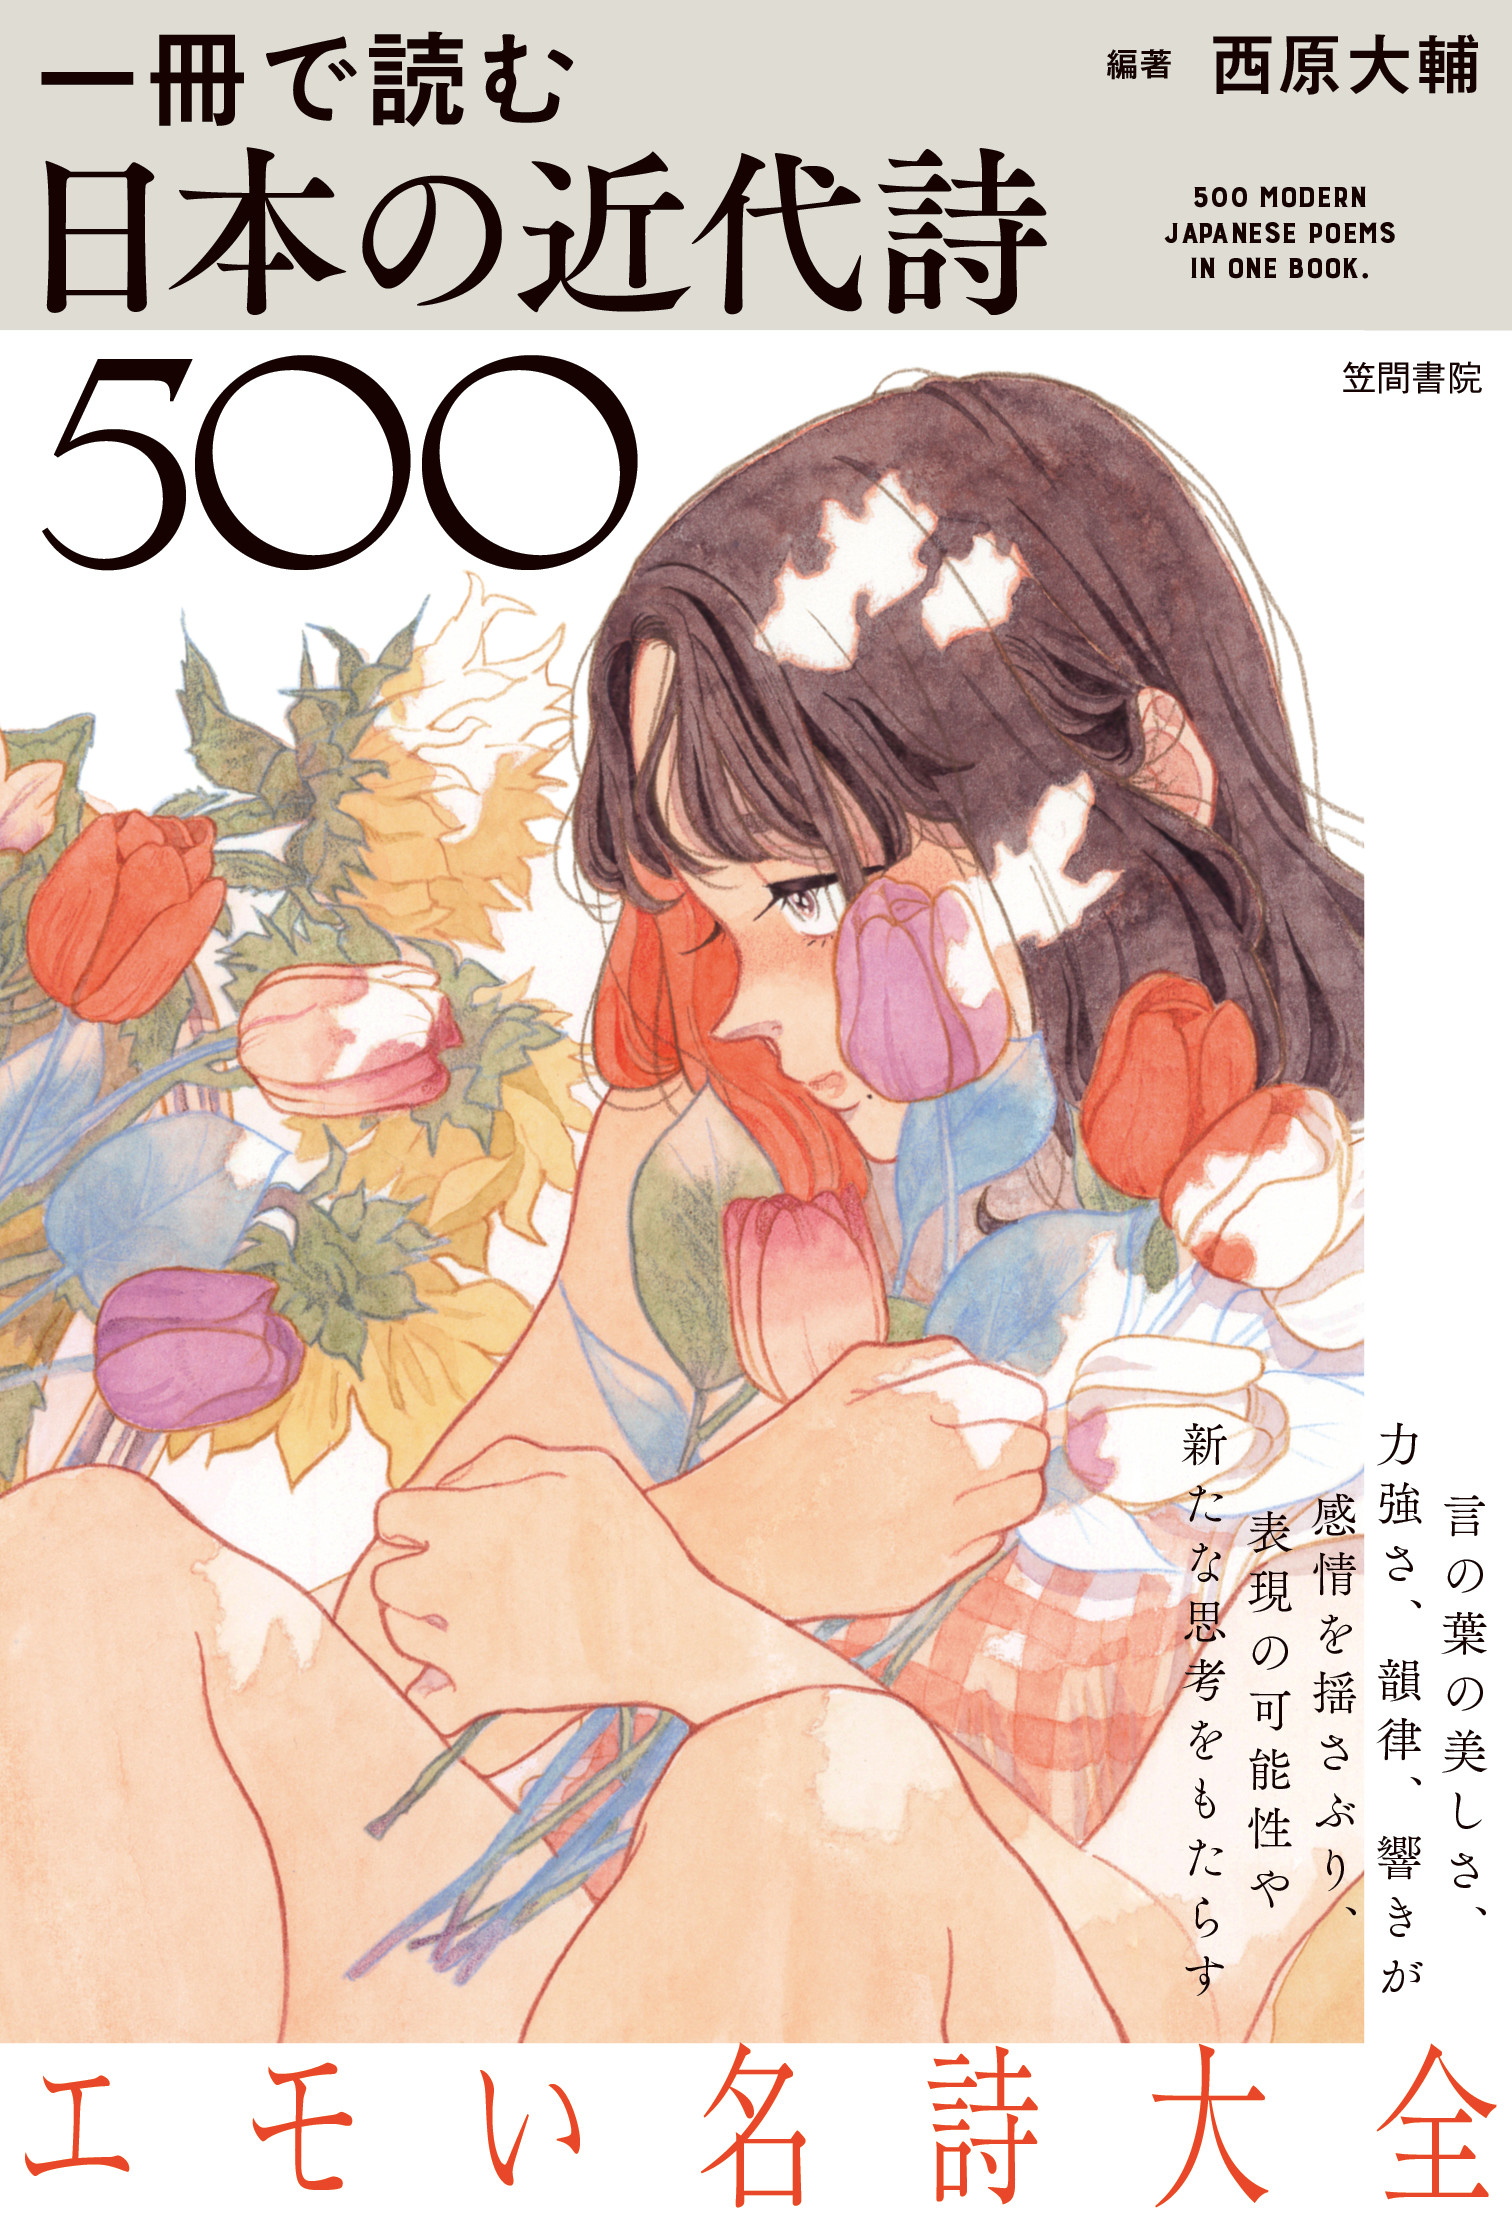 一冊で読む日本の近代詩500の商品画像